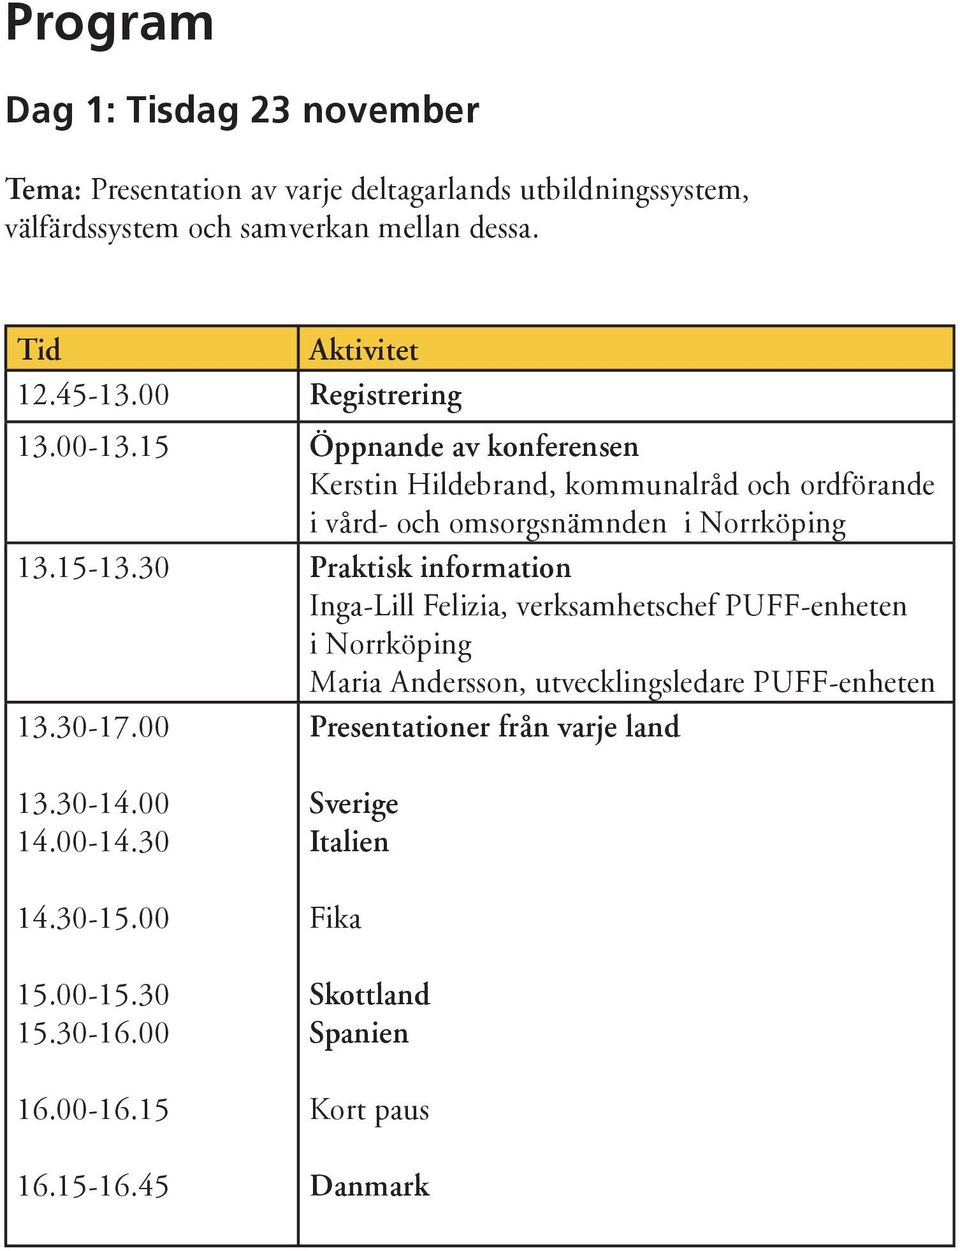 30 Praktisk information Inga-Lill Felizia, verksamhetschef PUFF-enheten i Norrköping Maria Andersson, utvecklingsledare PUFF-enheten 13.30-17.